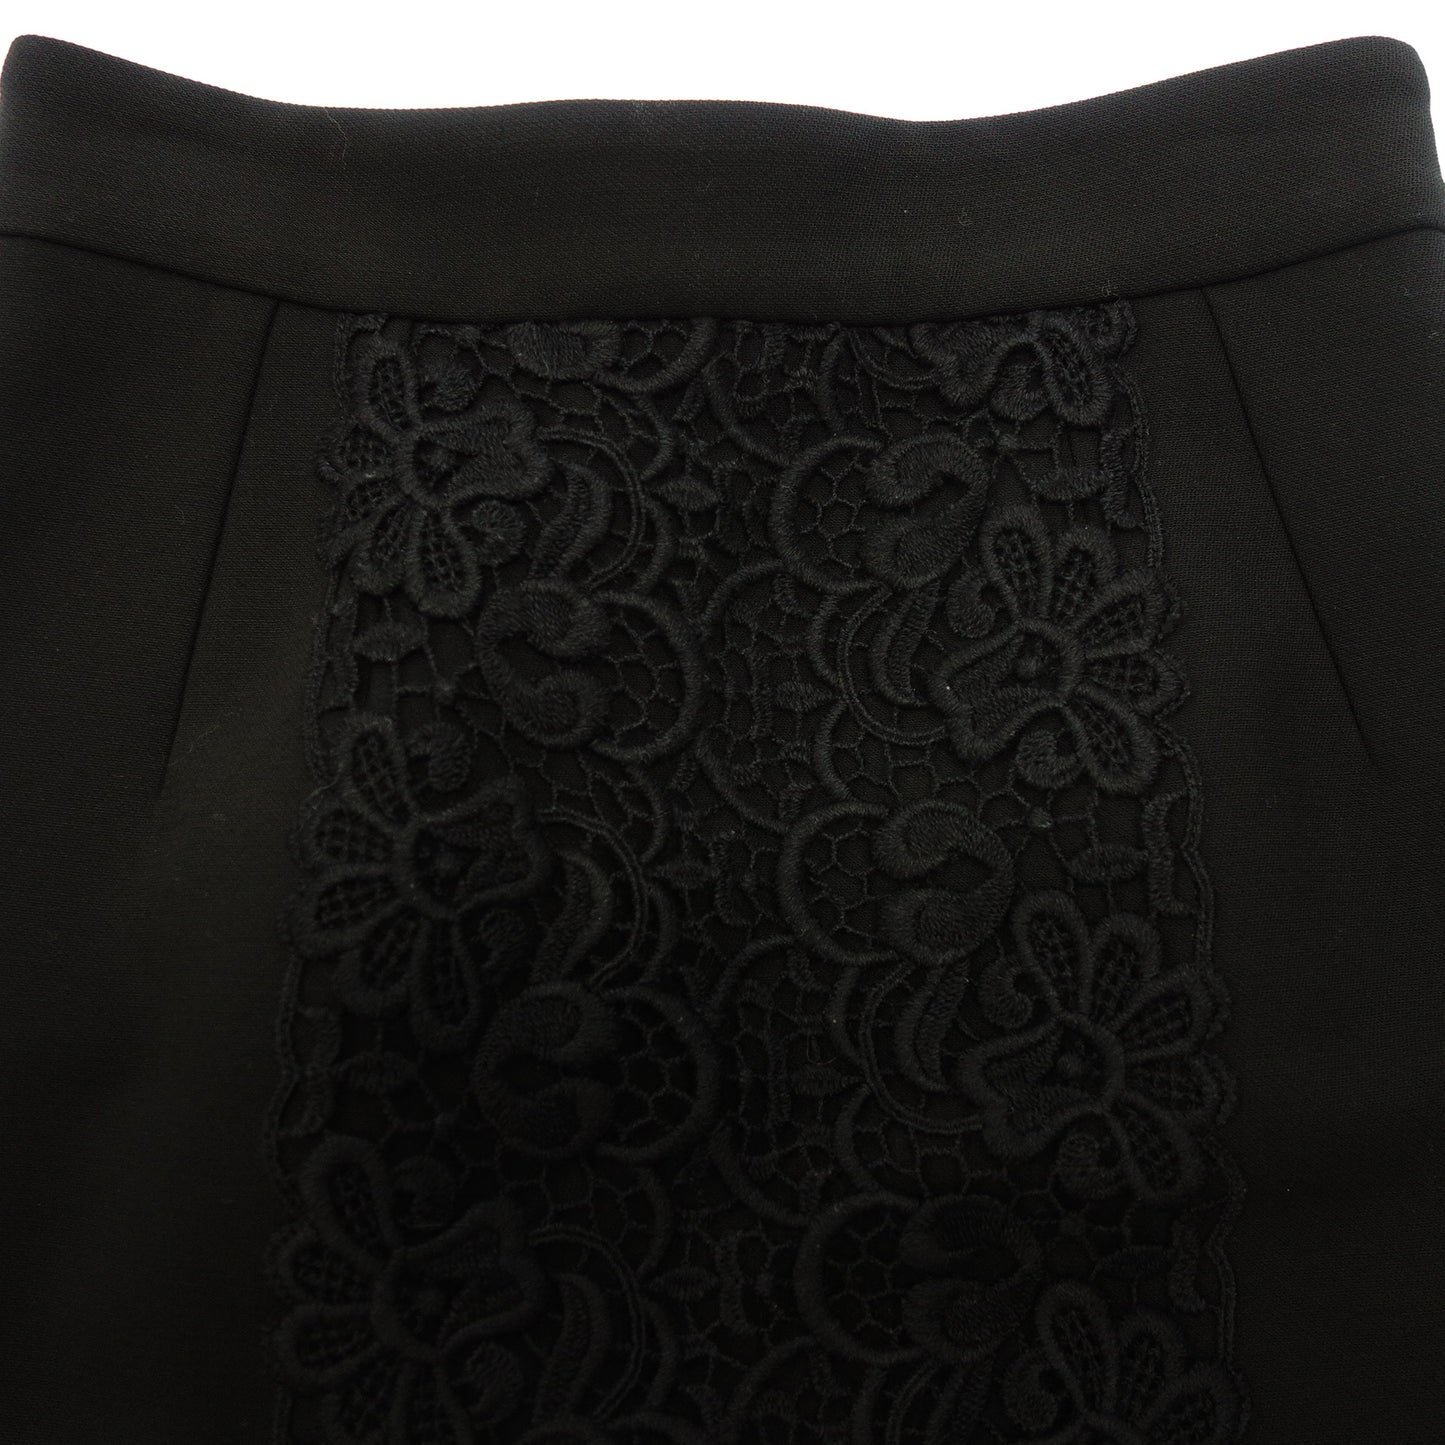 状况良好 ◆ Dolce &amp; Gabbana 裙子蕾丝设计羊毛 x 亚克力尺寸 38 女式黑色 DOLCE&amp;GABBANA [AFB21] 